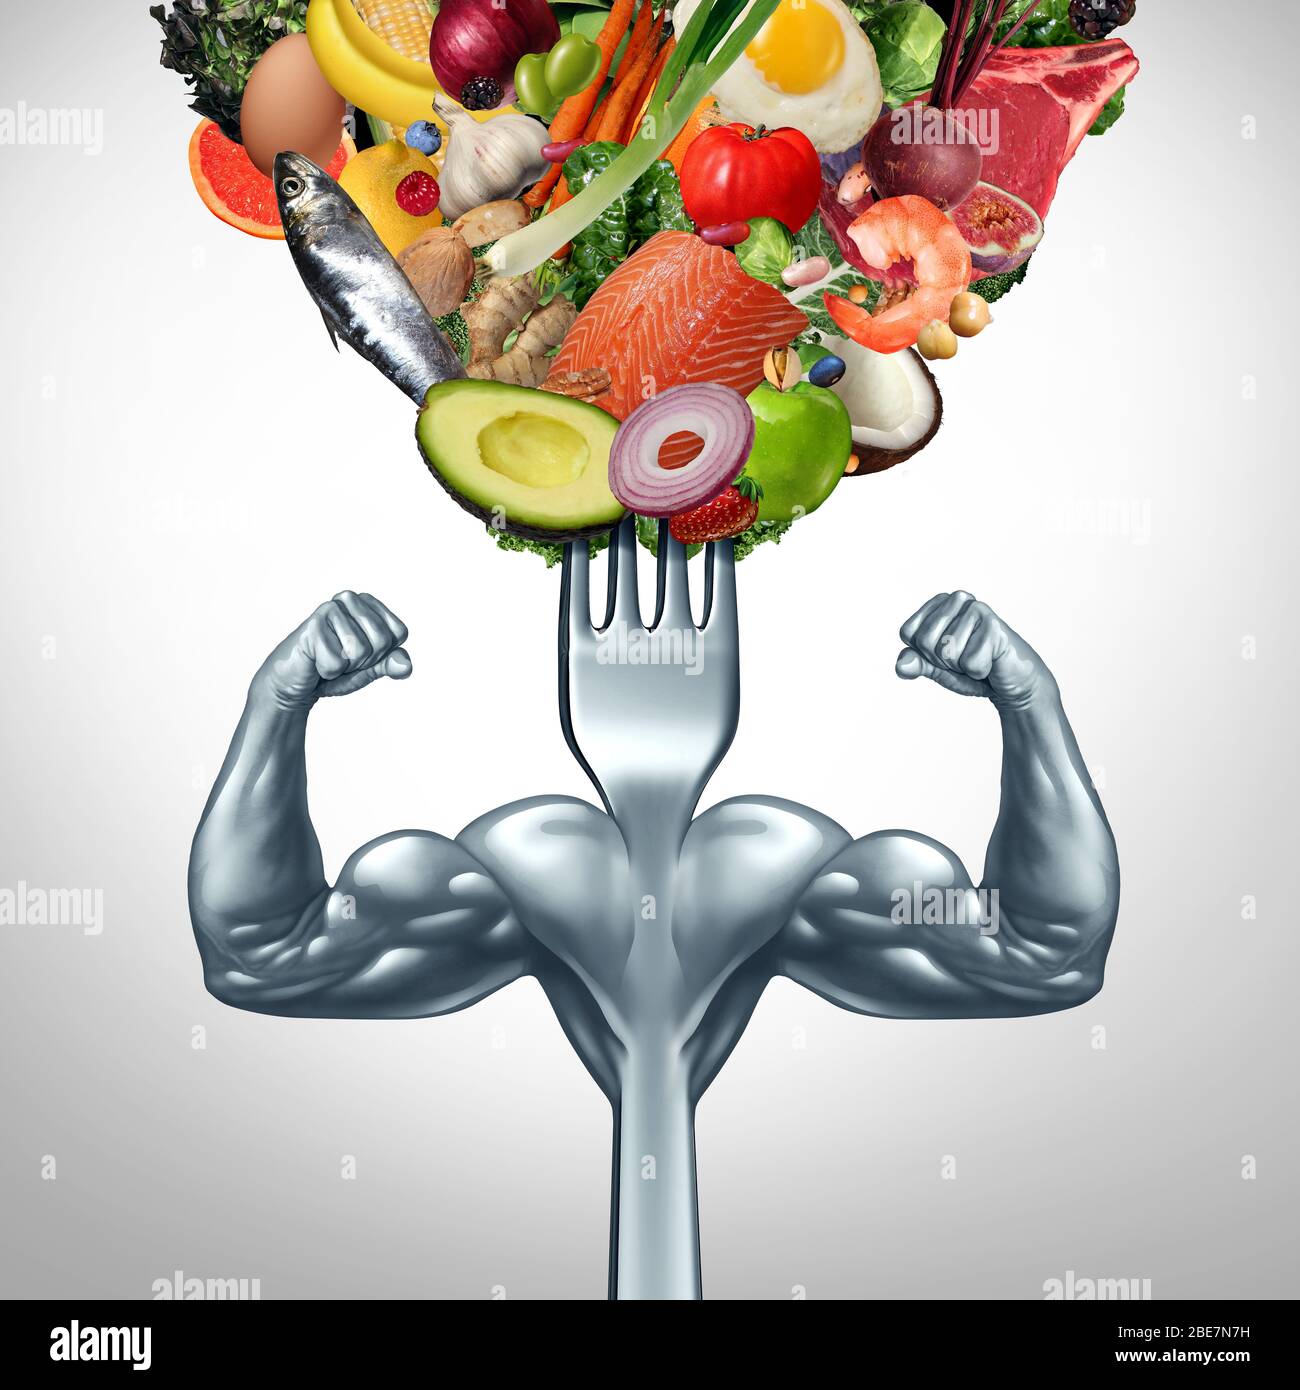 Kraftvolles Lebensmittel- und Power-Eating-Symbol für Krafttraining oder Workout mit Nahrungsergänzungsmittel als gesunder Fit-Lebensstil als Gabel. Stockfoto